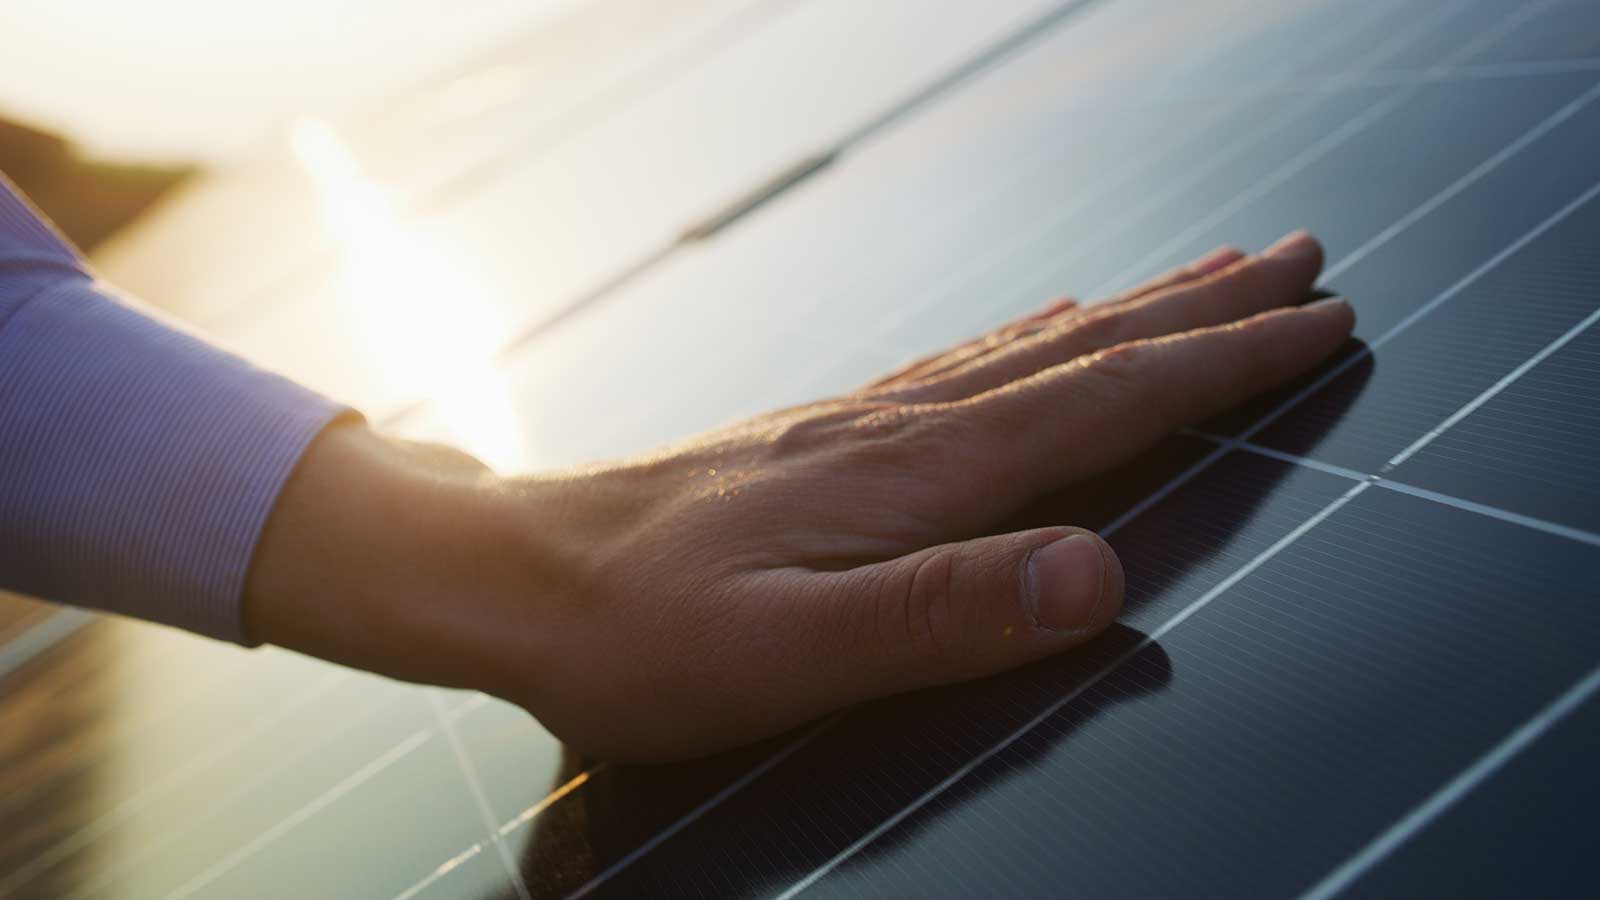 Energia solar no “Minha Casa, Minha Vida” pode gerar economia e sustentabilidade, segundo estudo